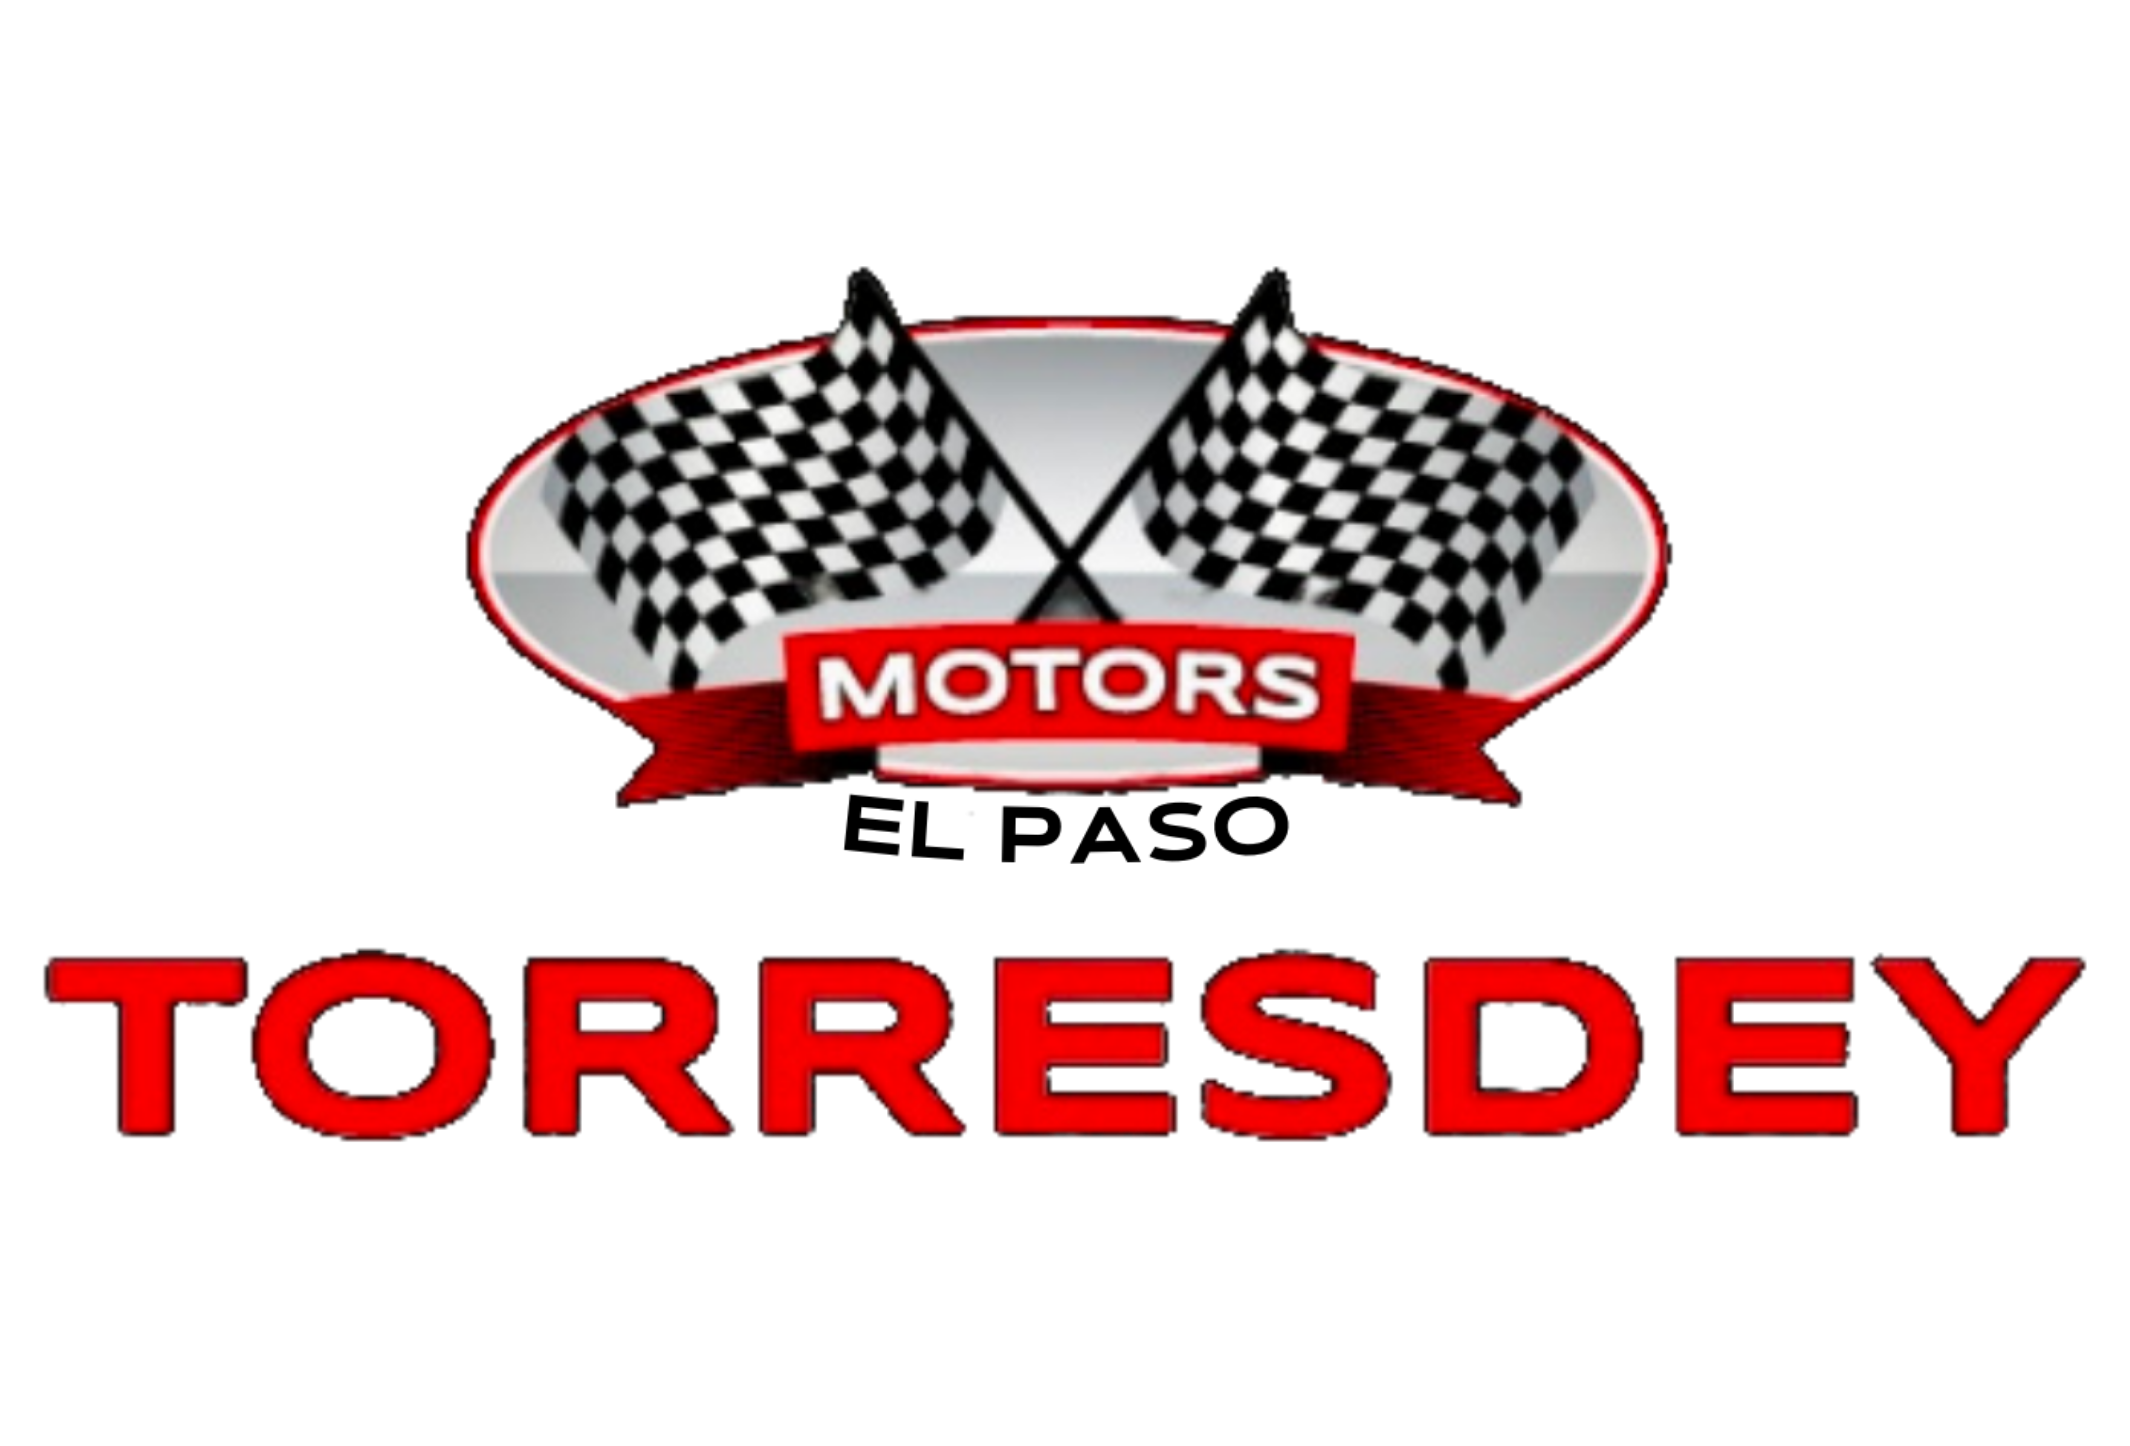 Torresdey Motors Corp.